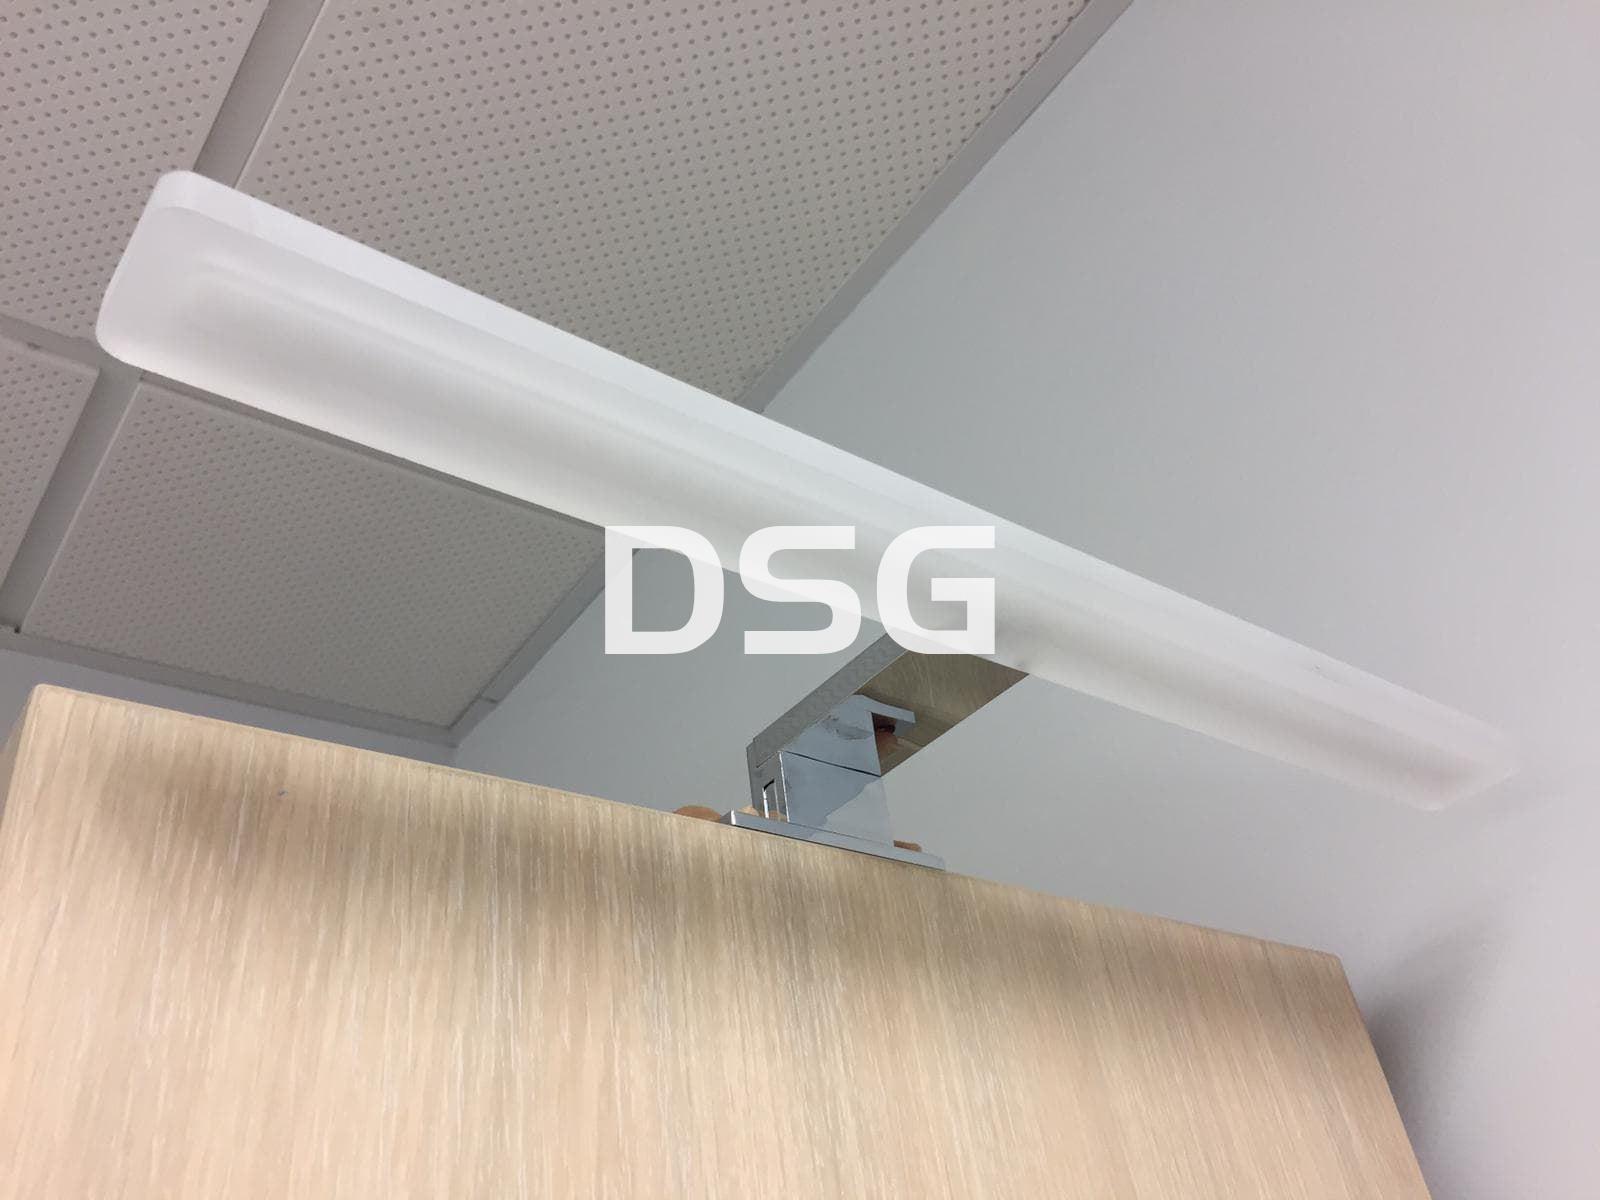 Aplique DSG4/5 45cm - Imagen 1